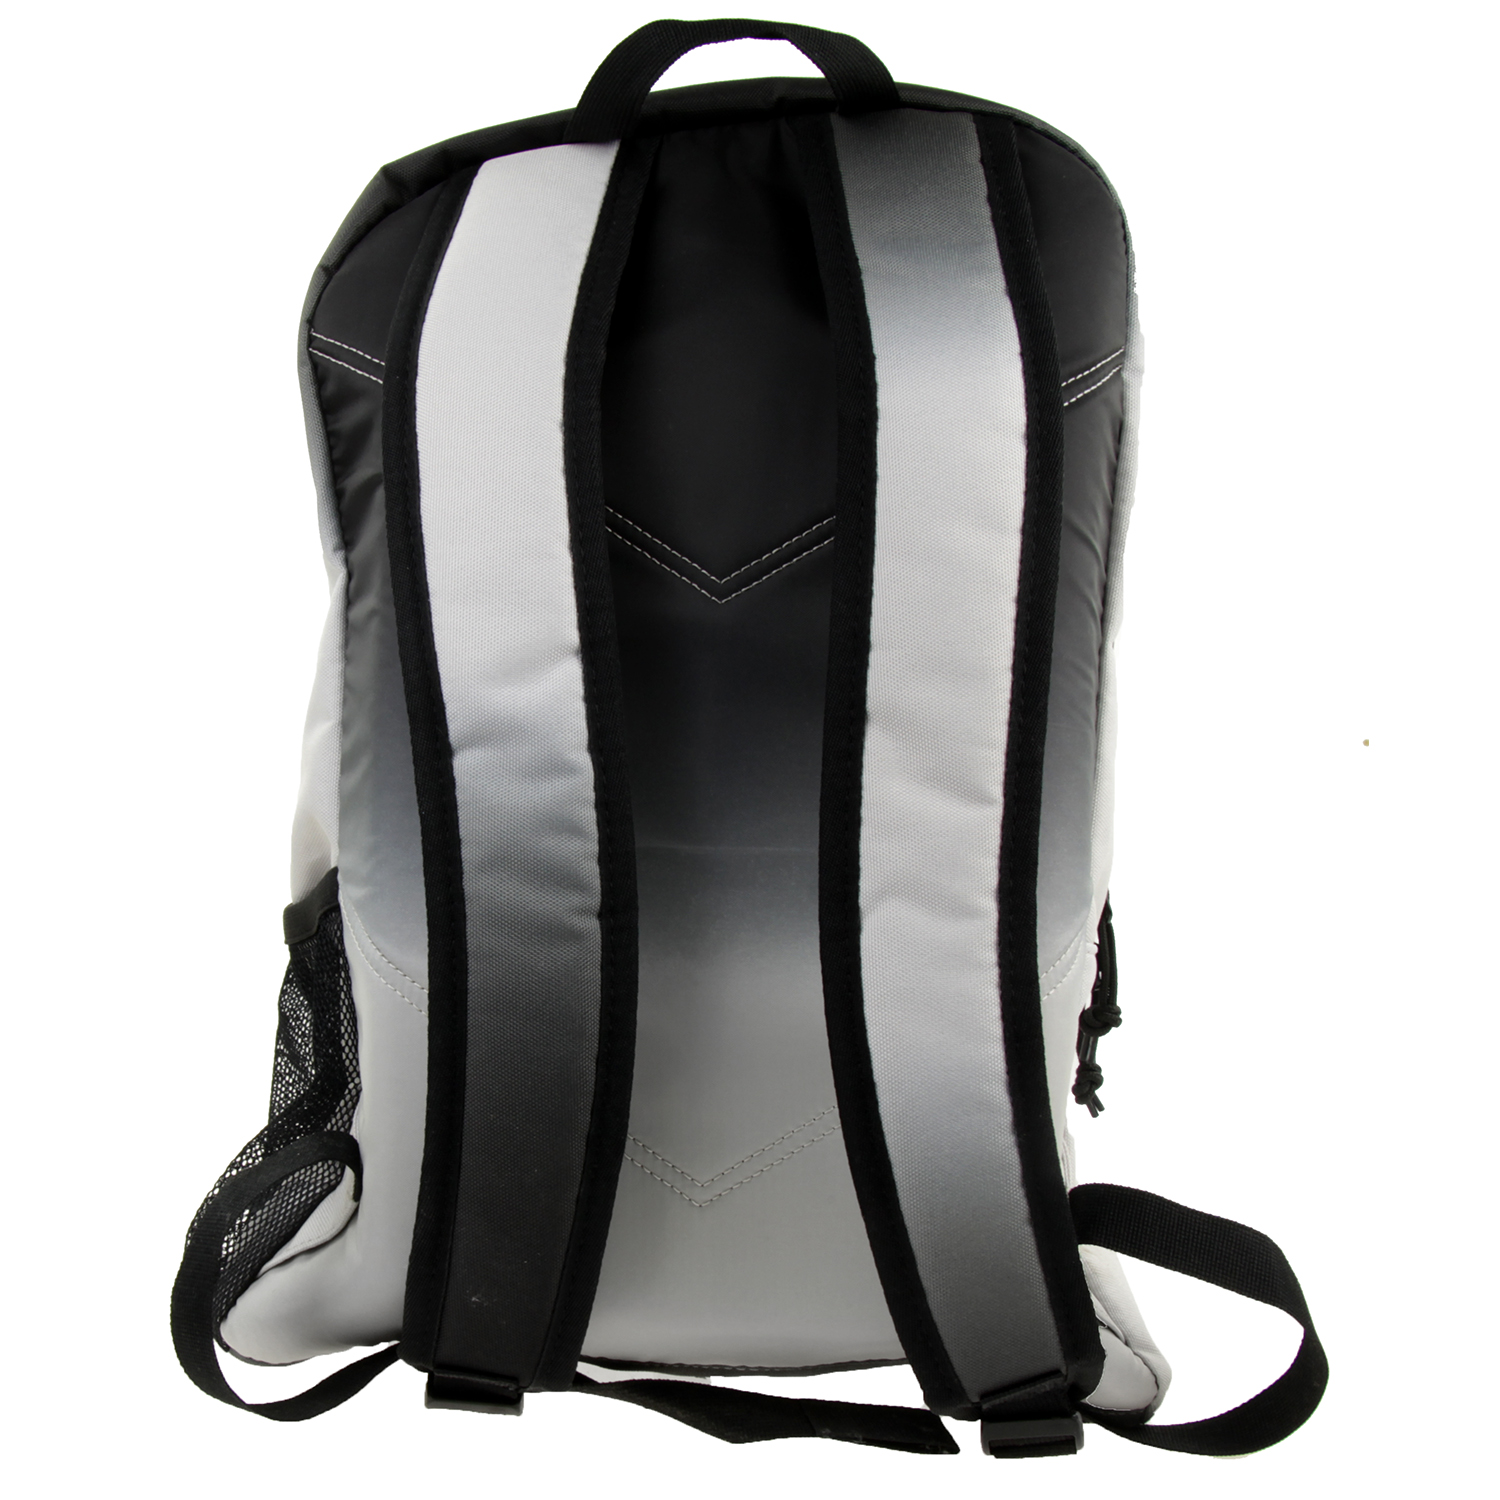 Converse Schoolpack XL Backpack Rucksack Unisex SET grau 45GXD90